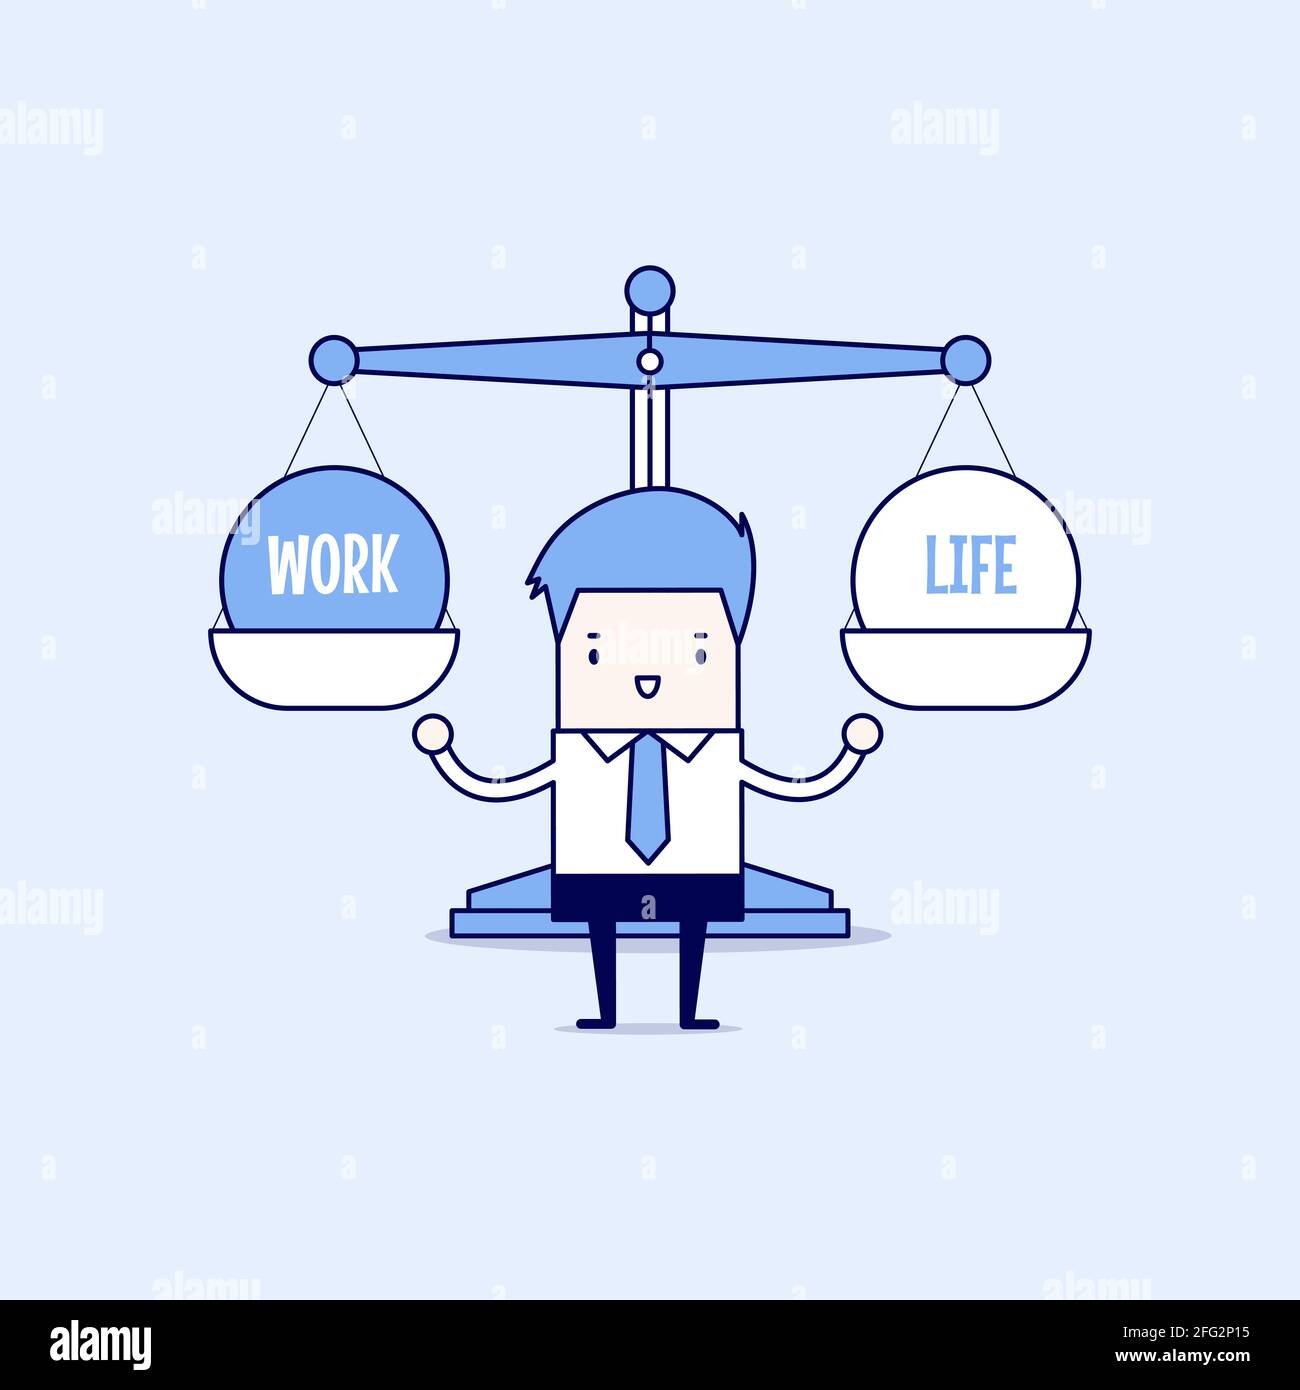 Work life balance cartoon hi-res stock photography and images - Alamy